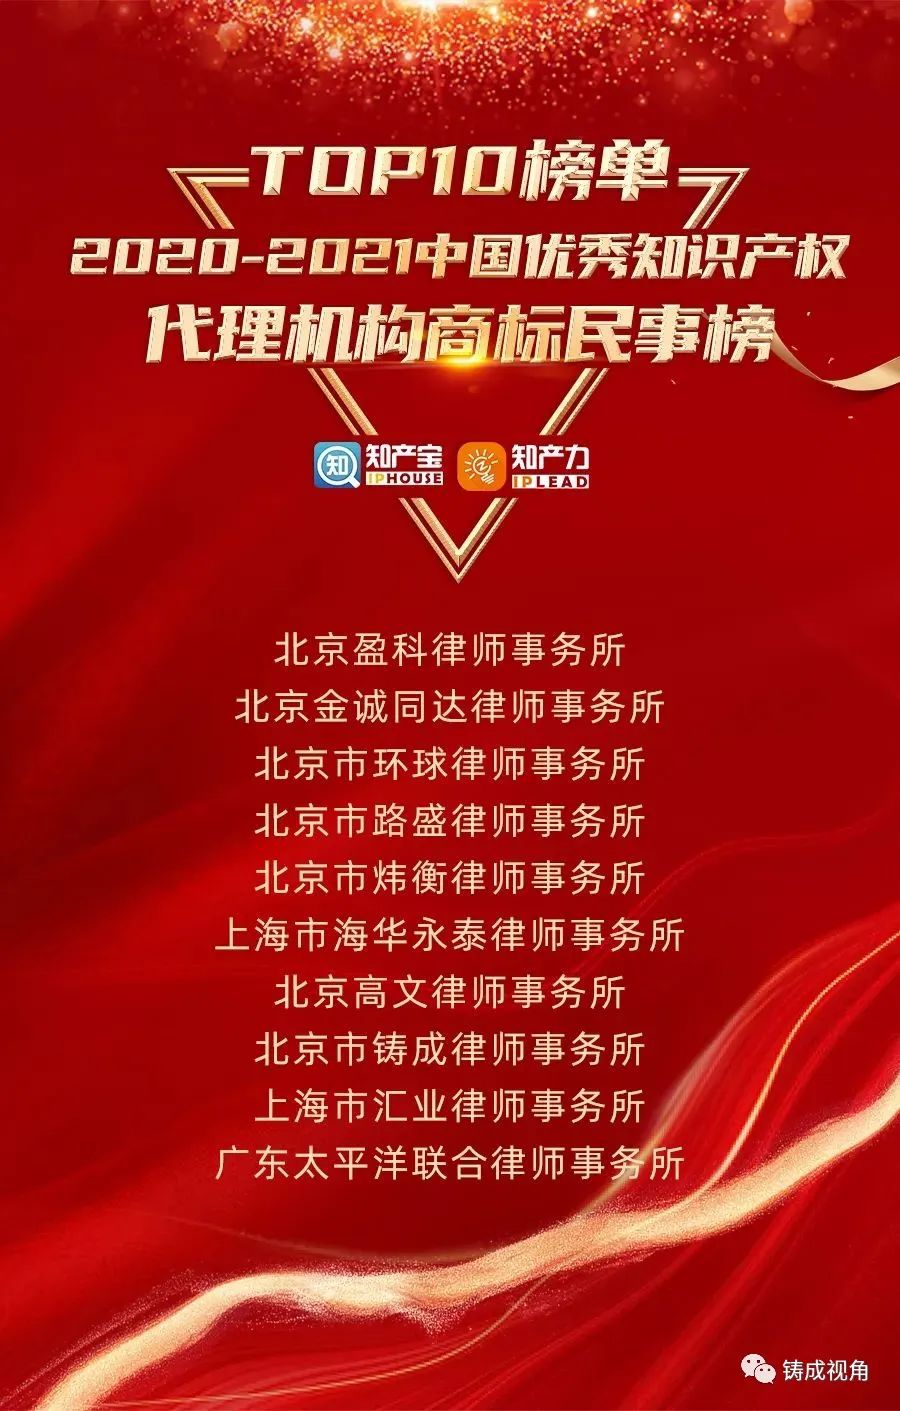 铸成荣登中国优秀知识产权代理机构TOP10榜单